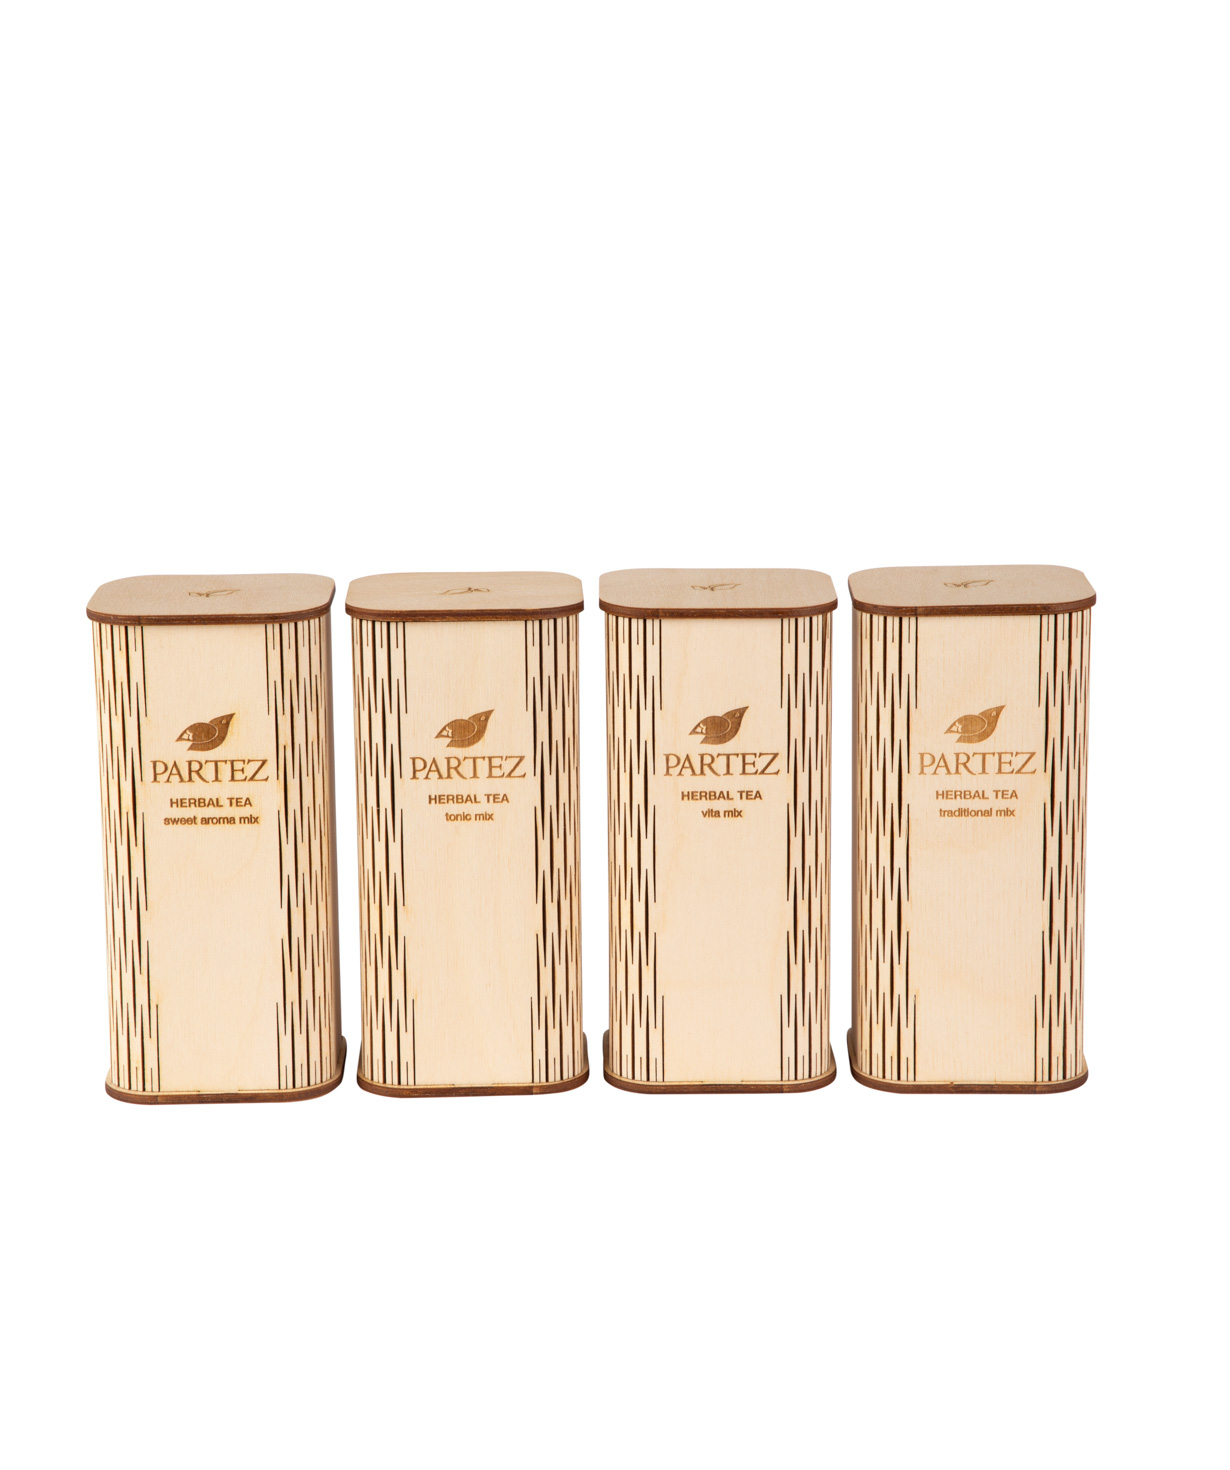 Collection `Partez` of teas, in a wooden souvenir box